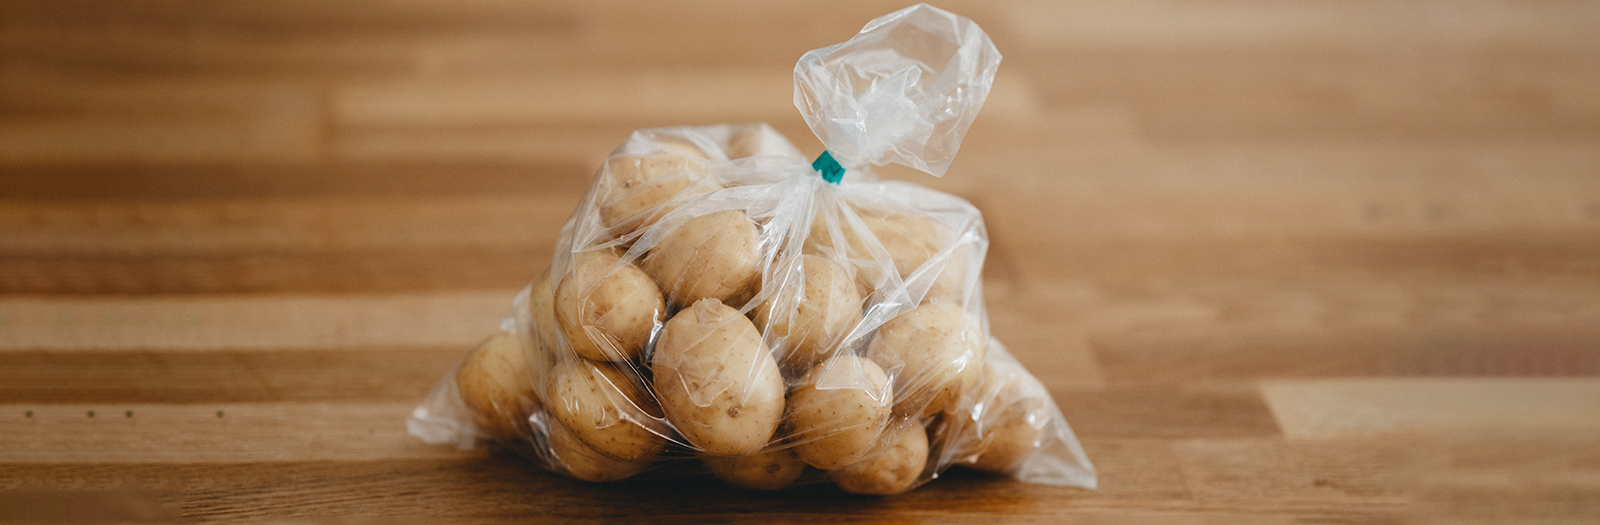 potatoes in plastic bag